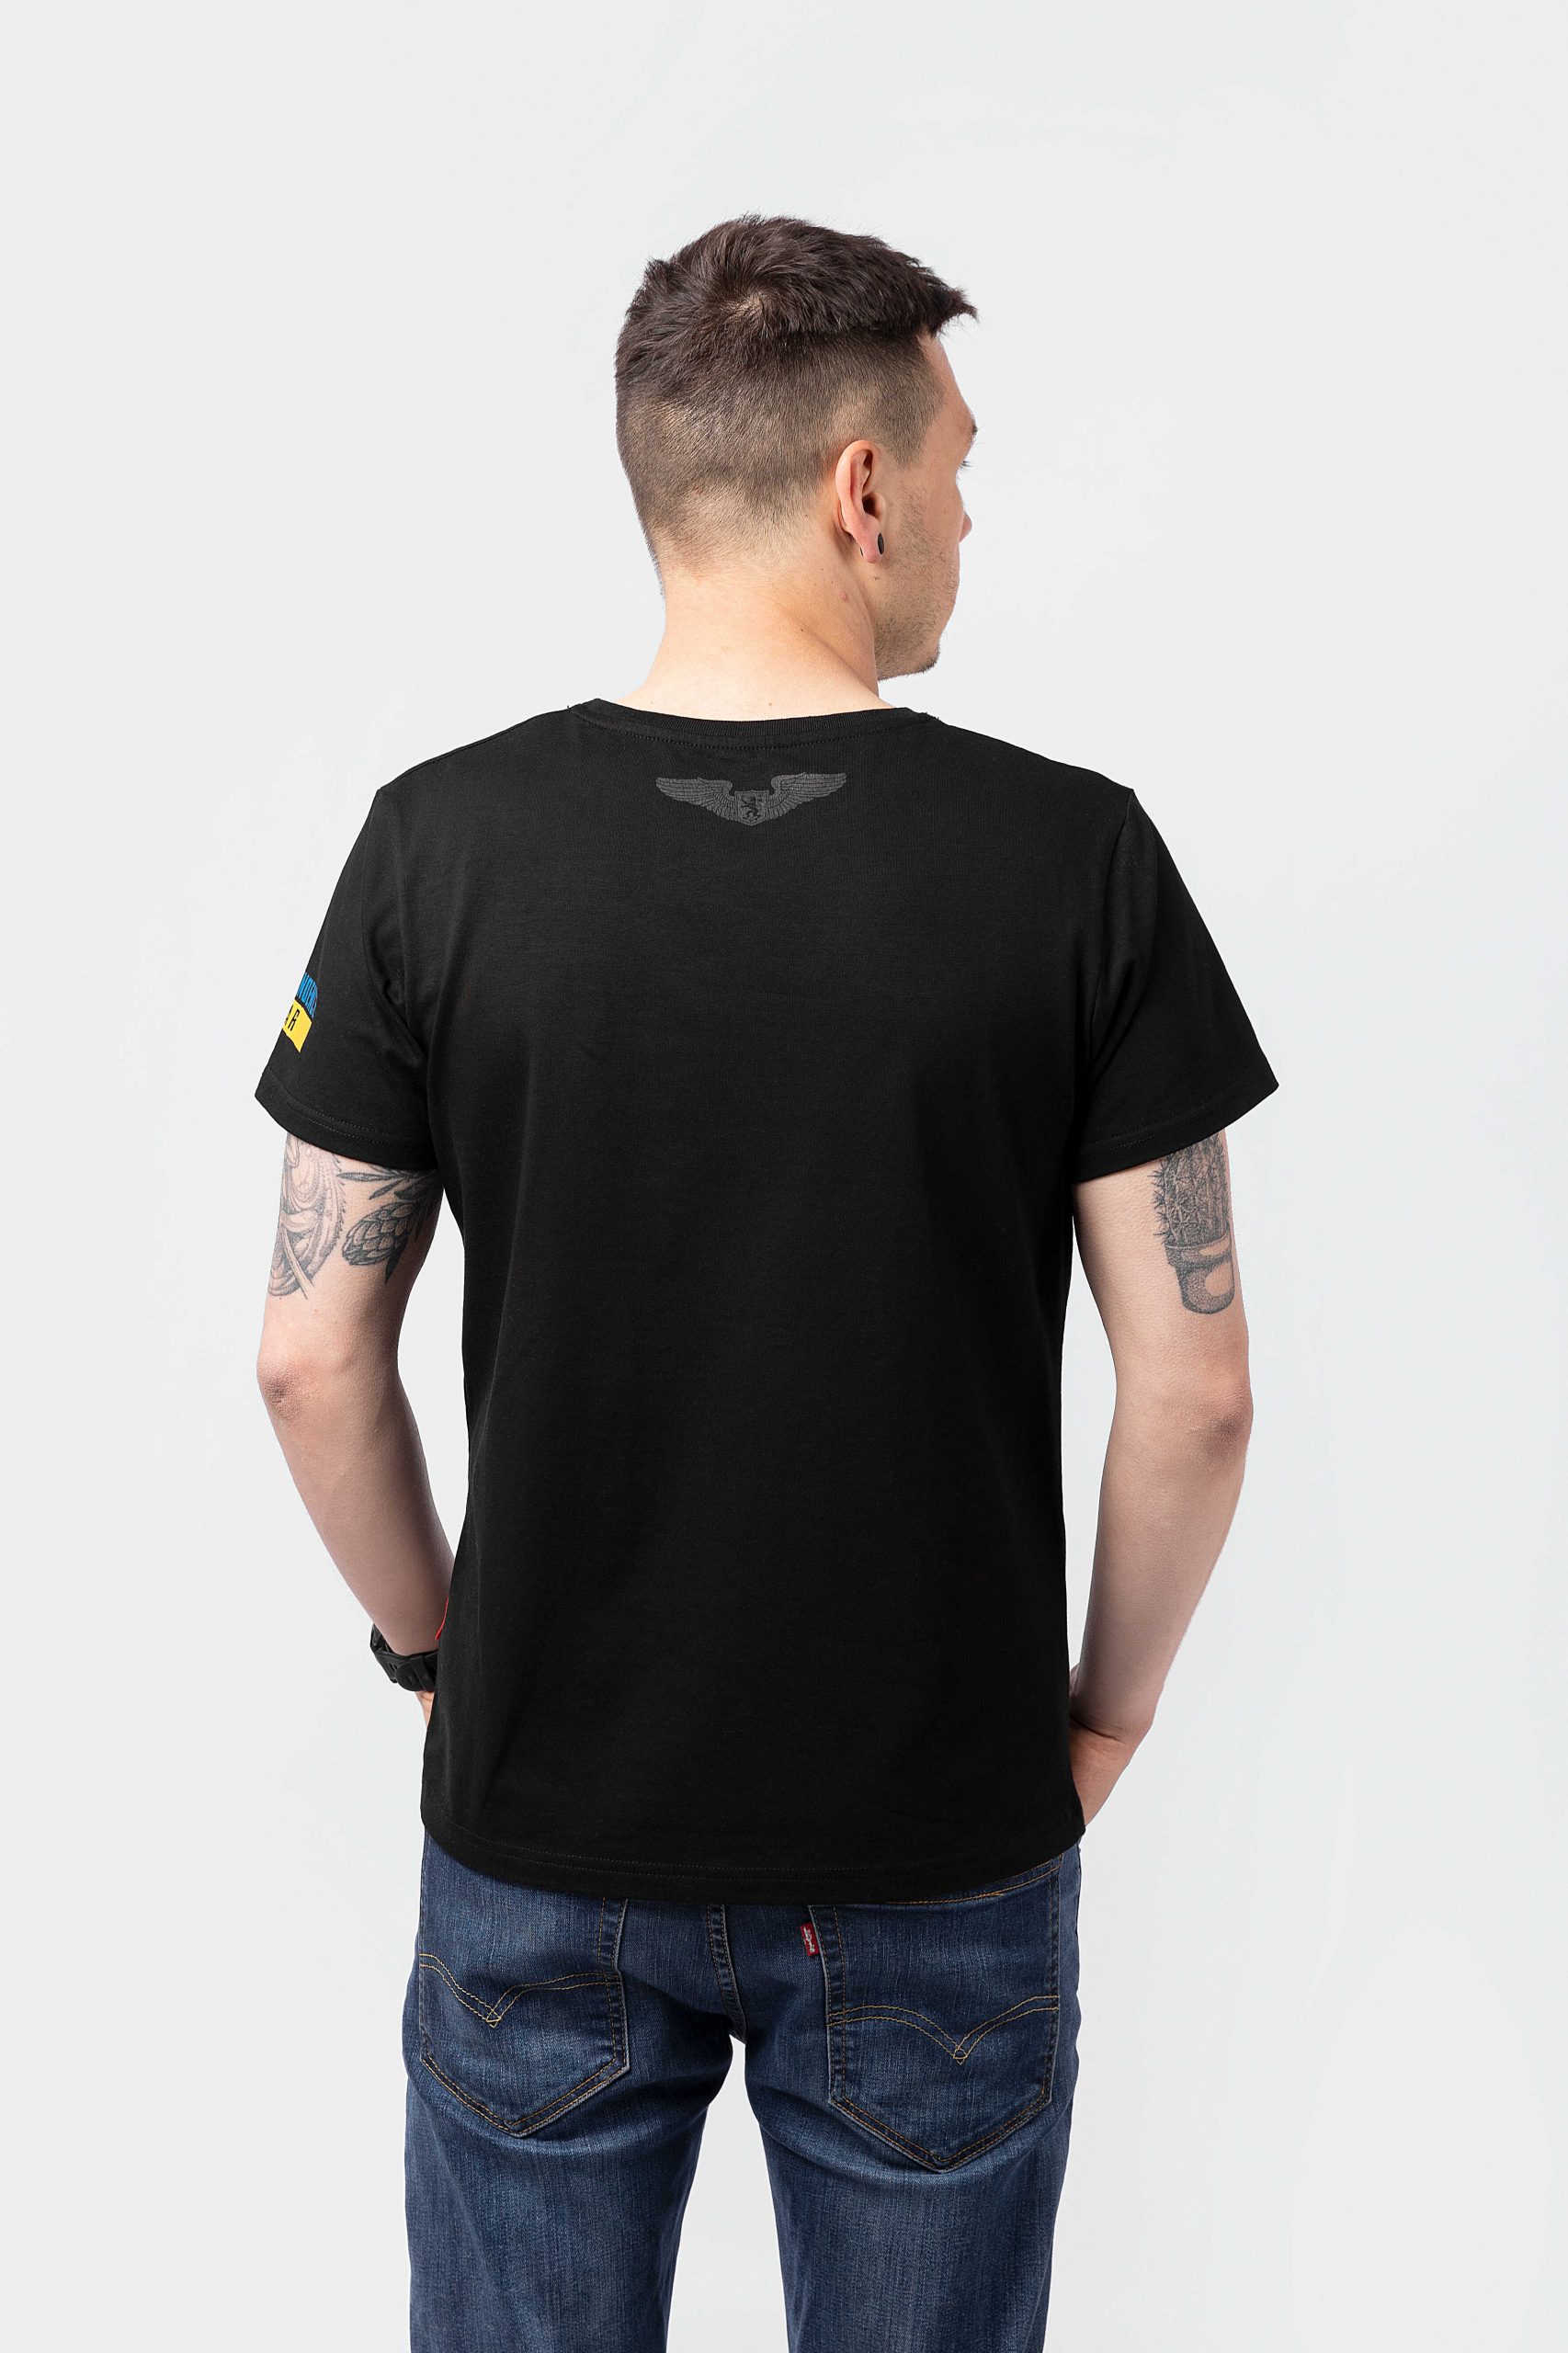 Men's T-Shirt Tank. Color black. 
Material: 95% cotton, 5% spandex.